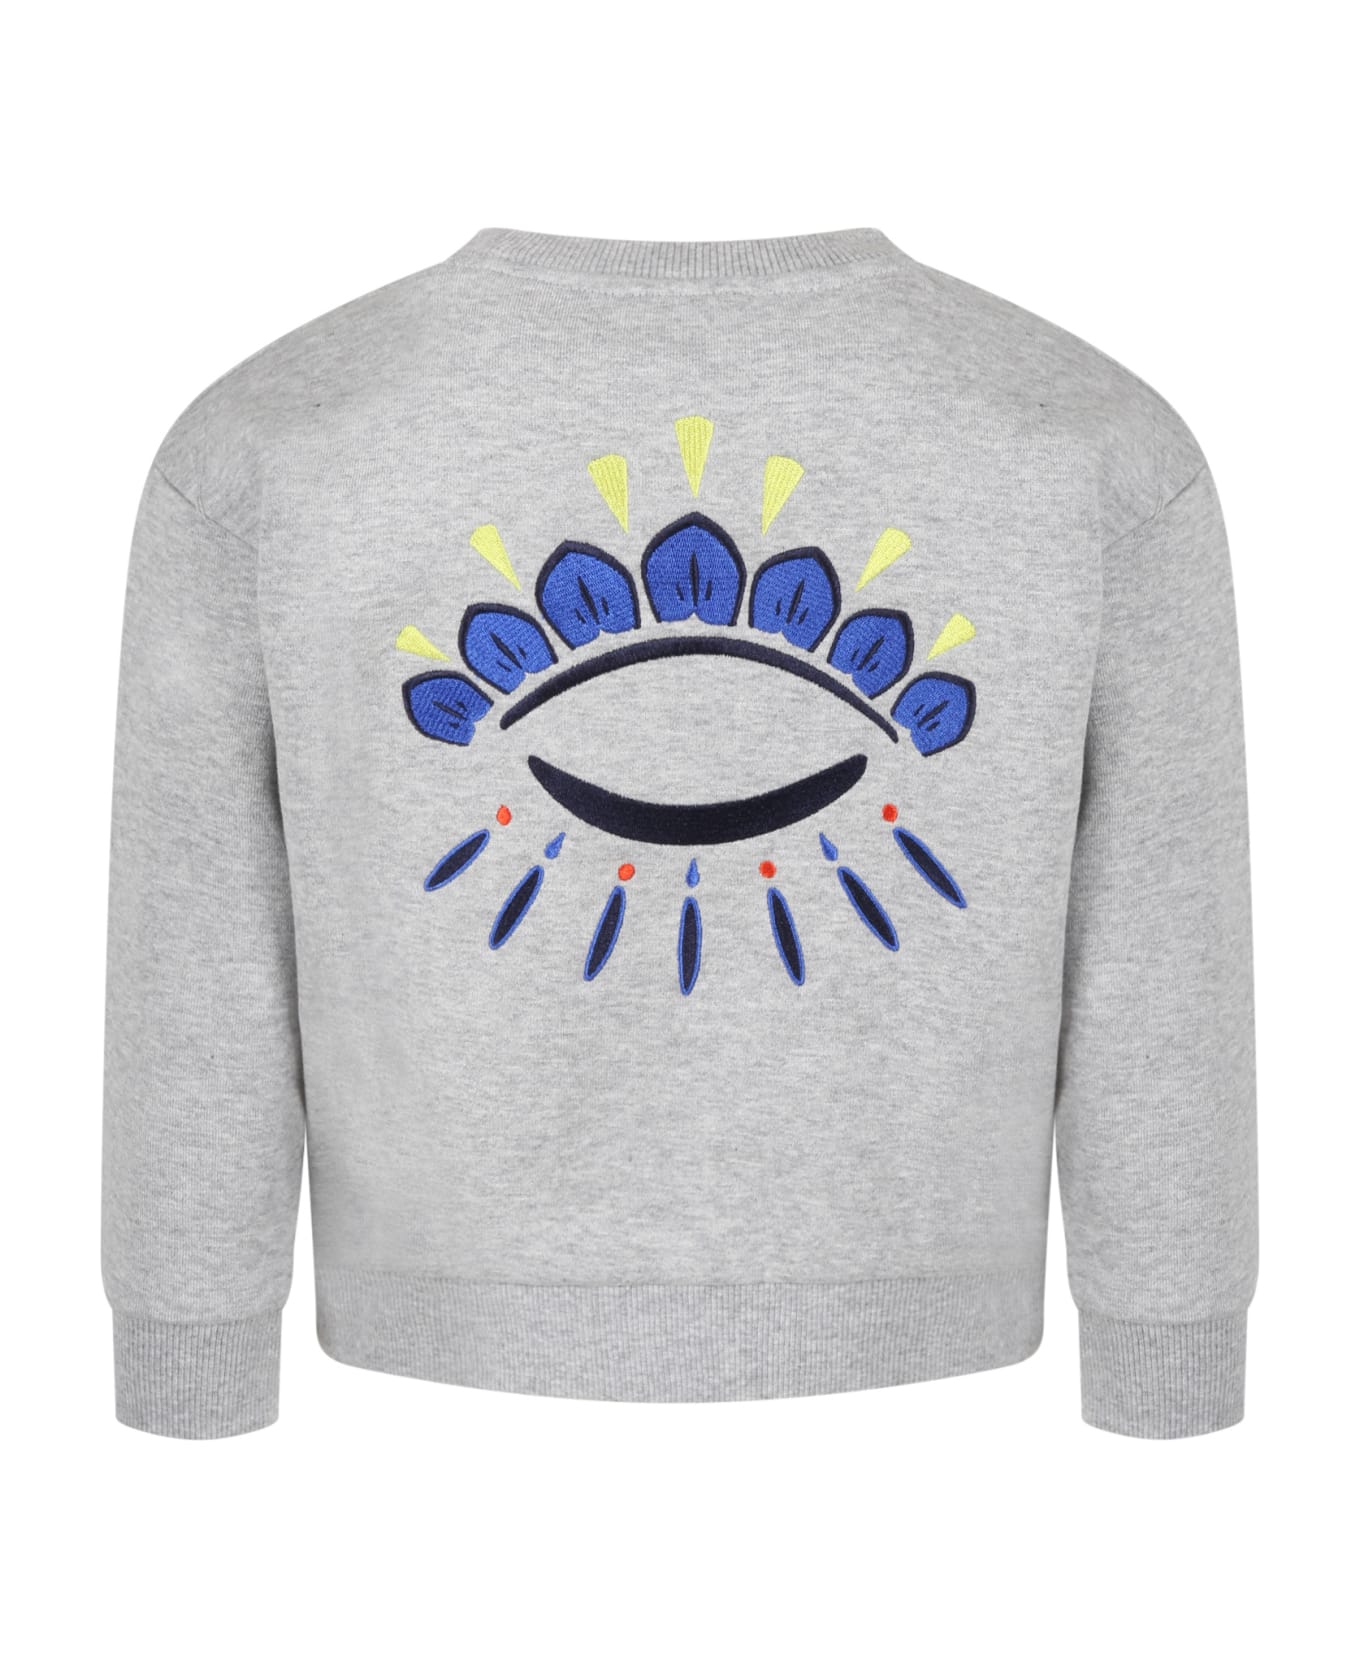 Kenzo Kids Grey Sweatshirt For Boy With Iconic Eye - Grey